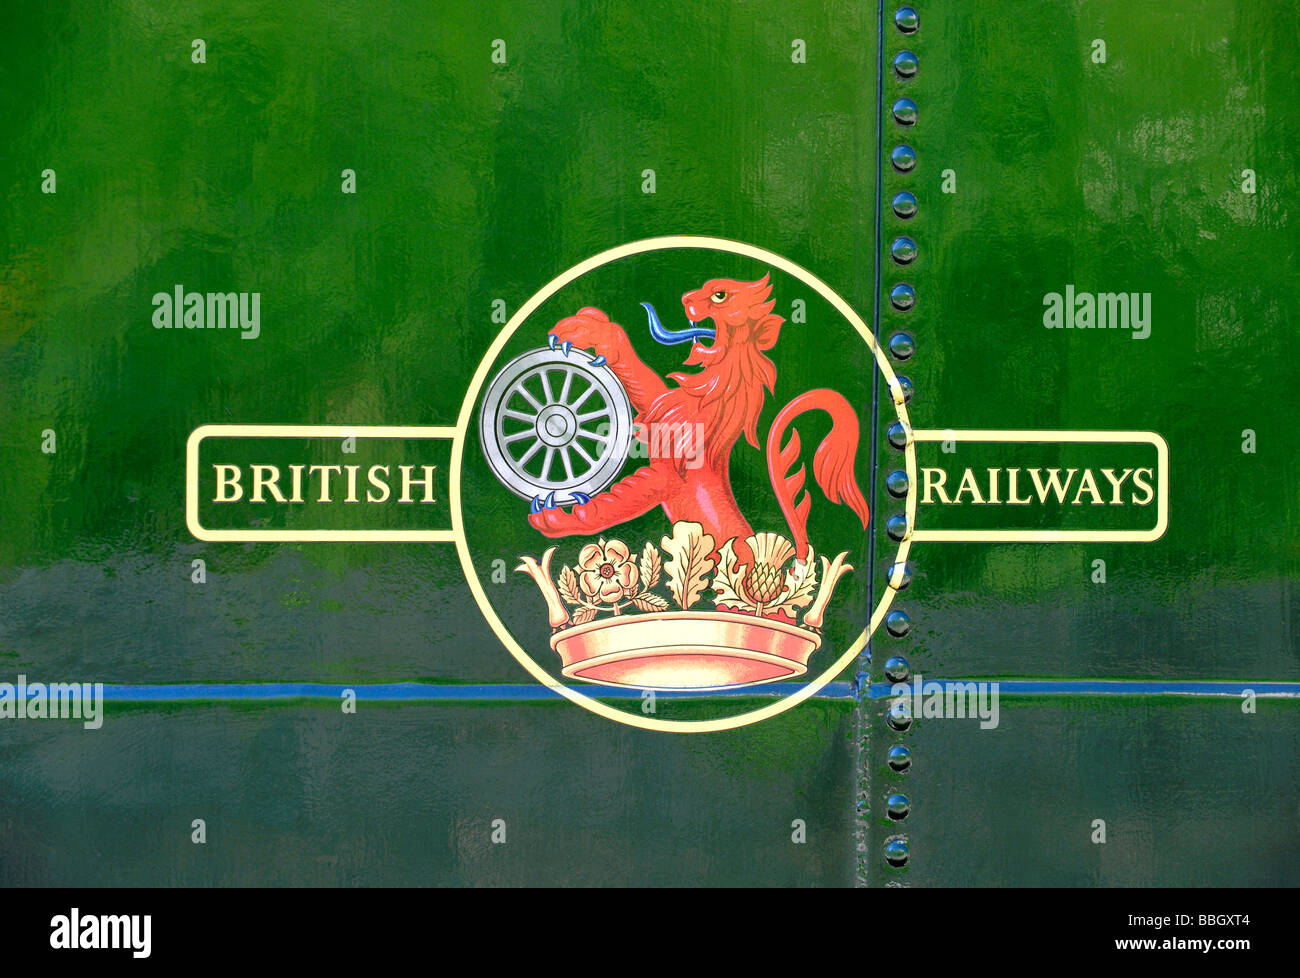 Los ferrocarriles británicos firman en el lateral de un tren a vapor Foto de stock